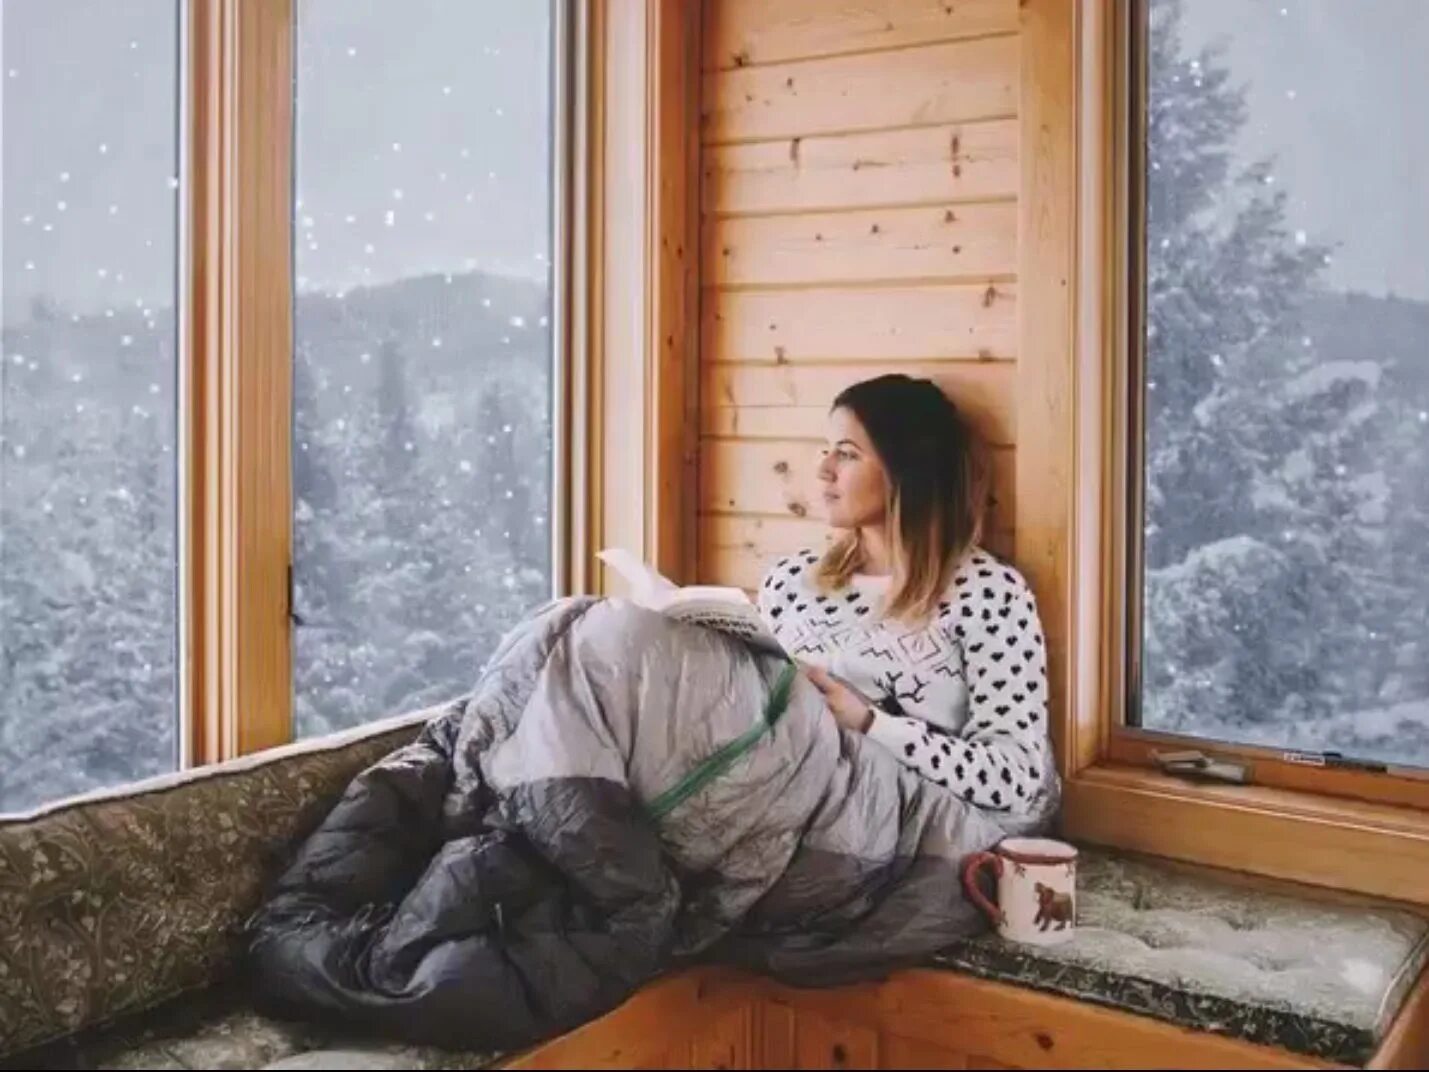 Еще спят в своих теплых норах. Зимняя фотосессия у окна. Девушка в зимнем домике. Девушка за окном зима. Зима за окном.